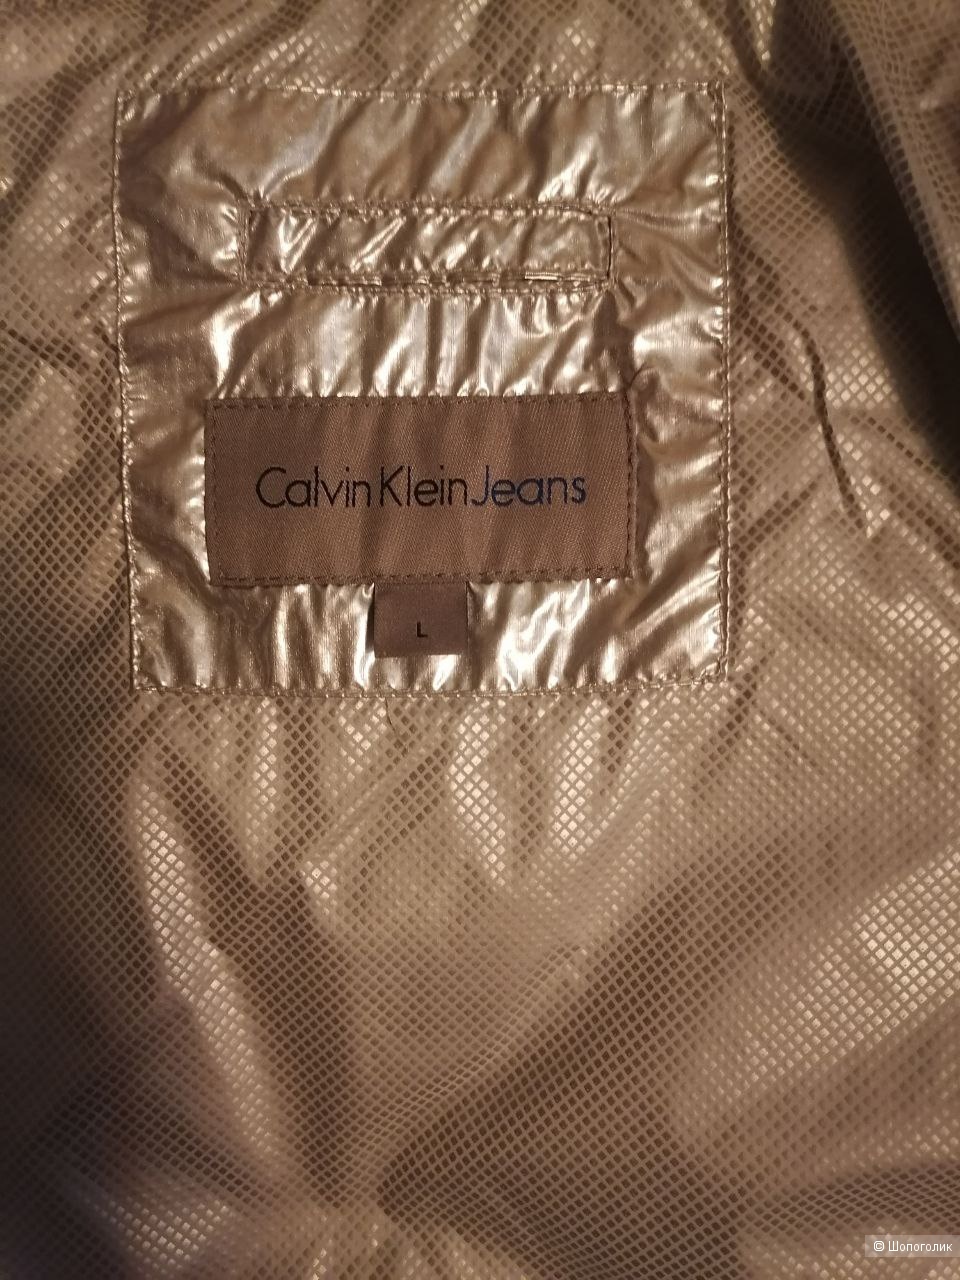 Ветровка Calvin Klein Jeans, L(46-48)